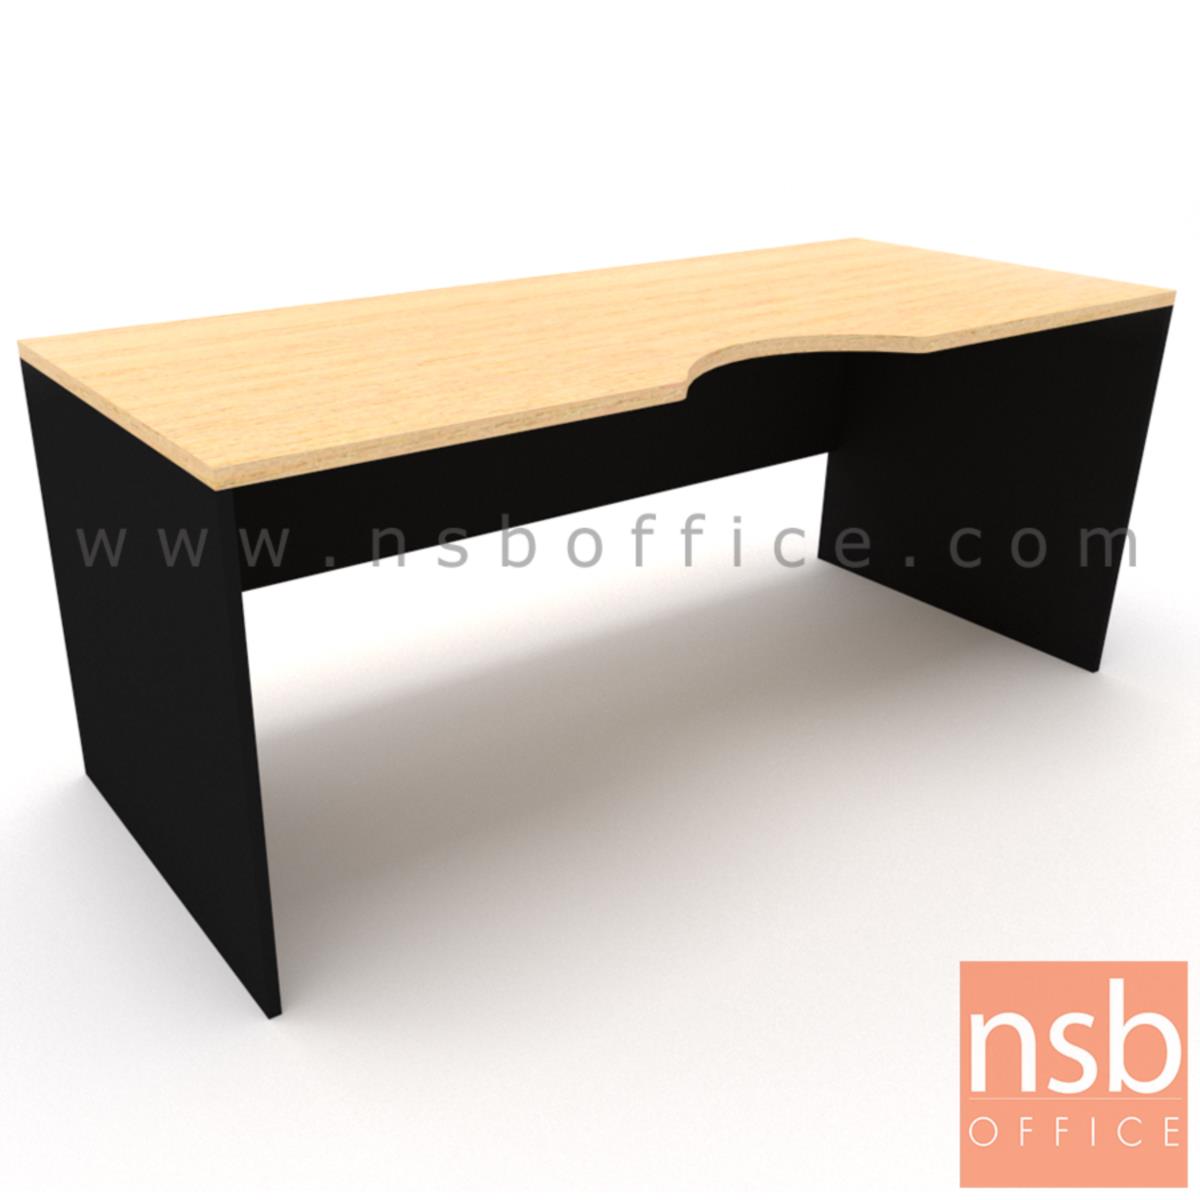 โต๊ะทำงานโล่งหน้าเว้าโค้งใบไม้   ขนาด 120W,150W,180W*(60D,75D) cm.  ไม่รวมพาร์ทิชั่น